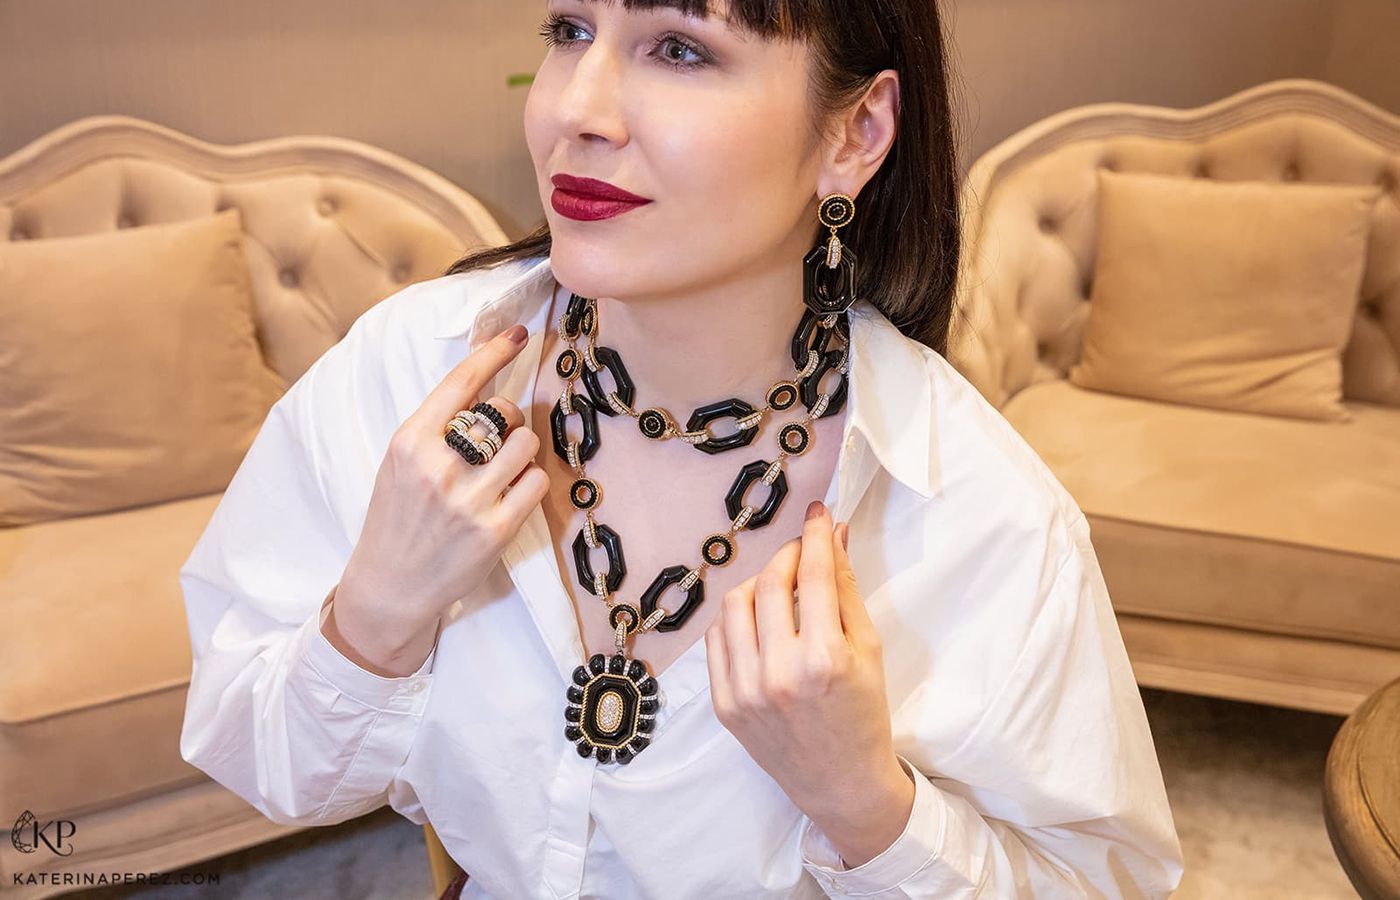 Katerina Perez wears a suite of jewellery by Veschetti 